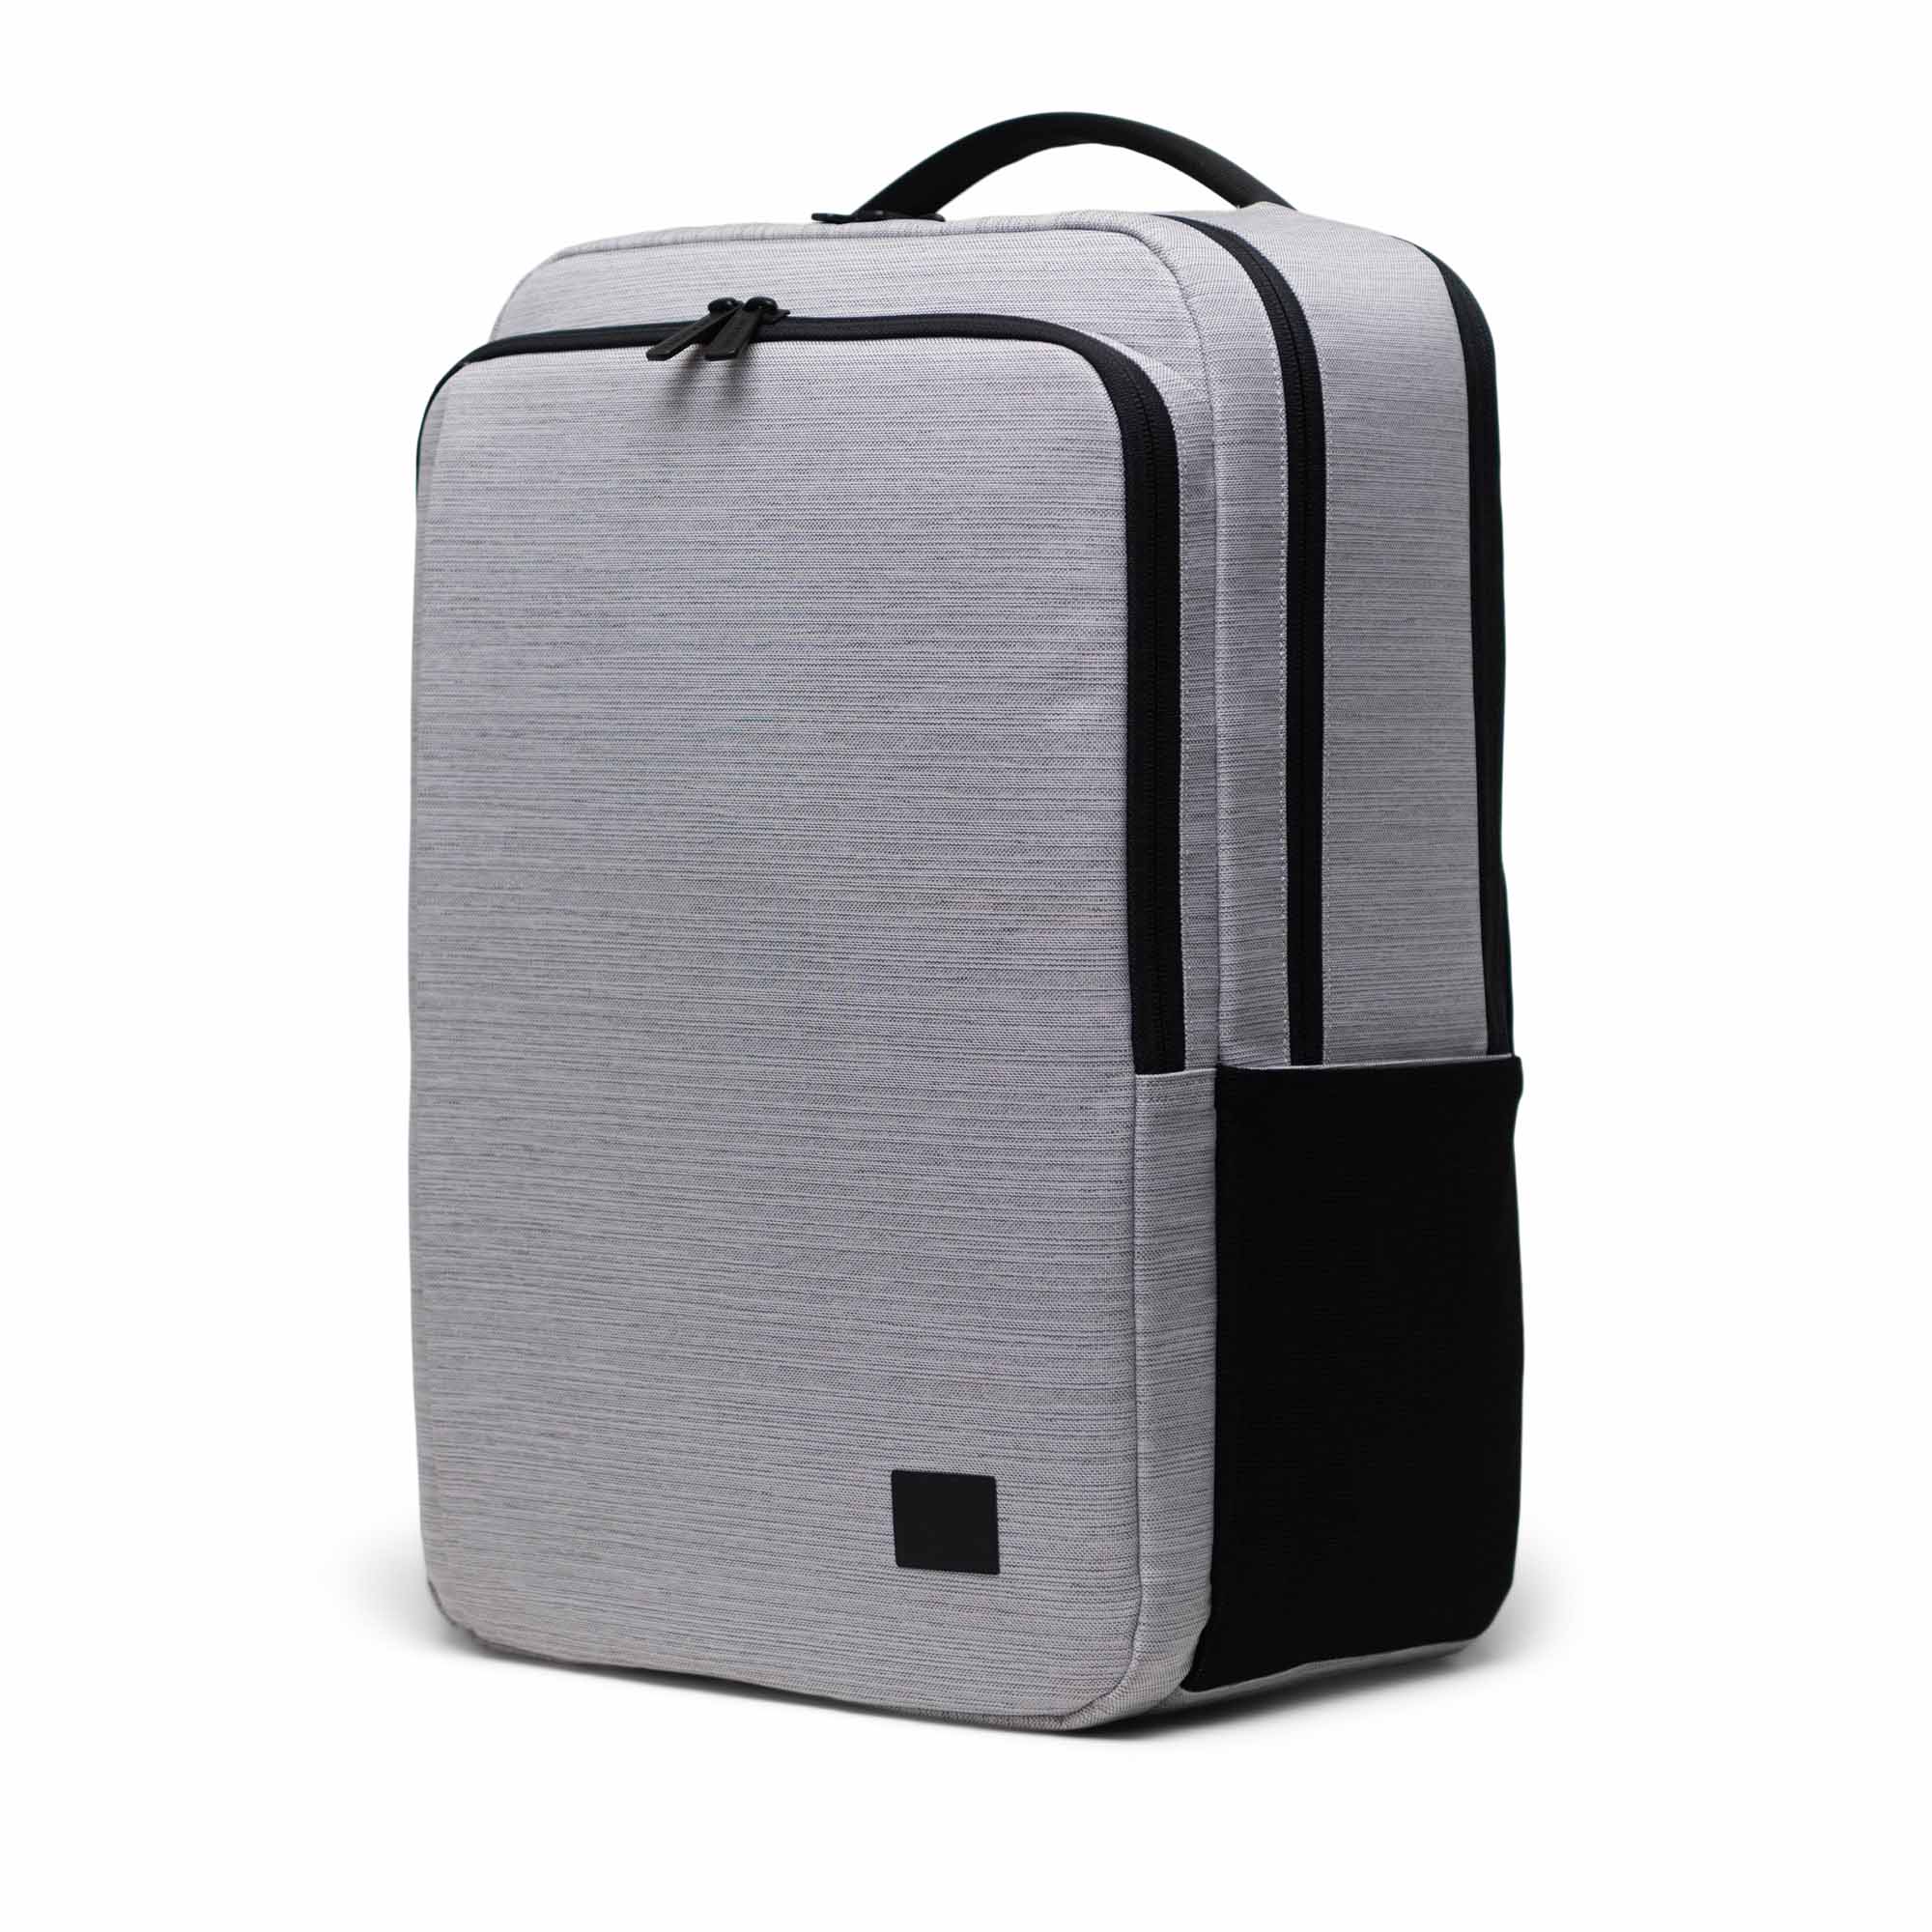 Kaslo Backpack Tech | Herschel Supply Company